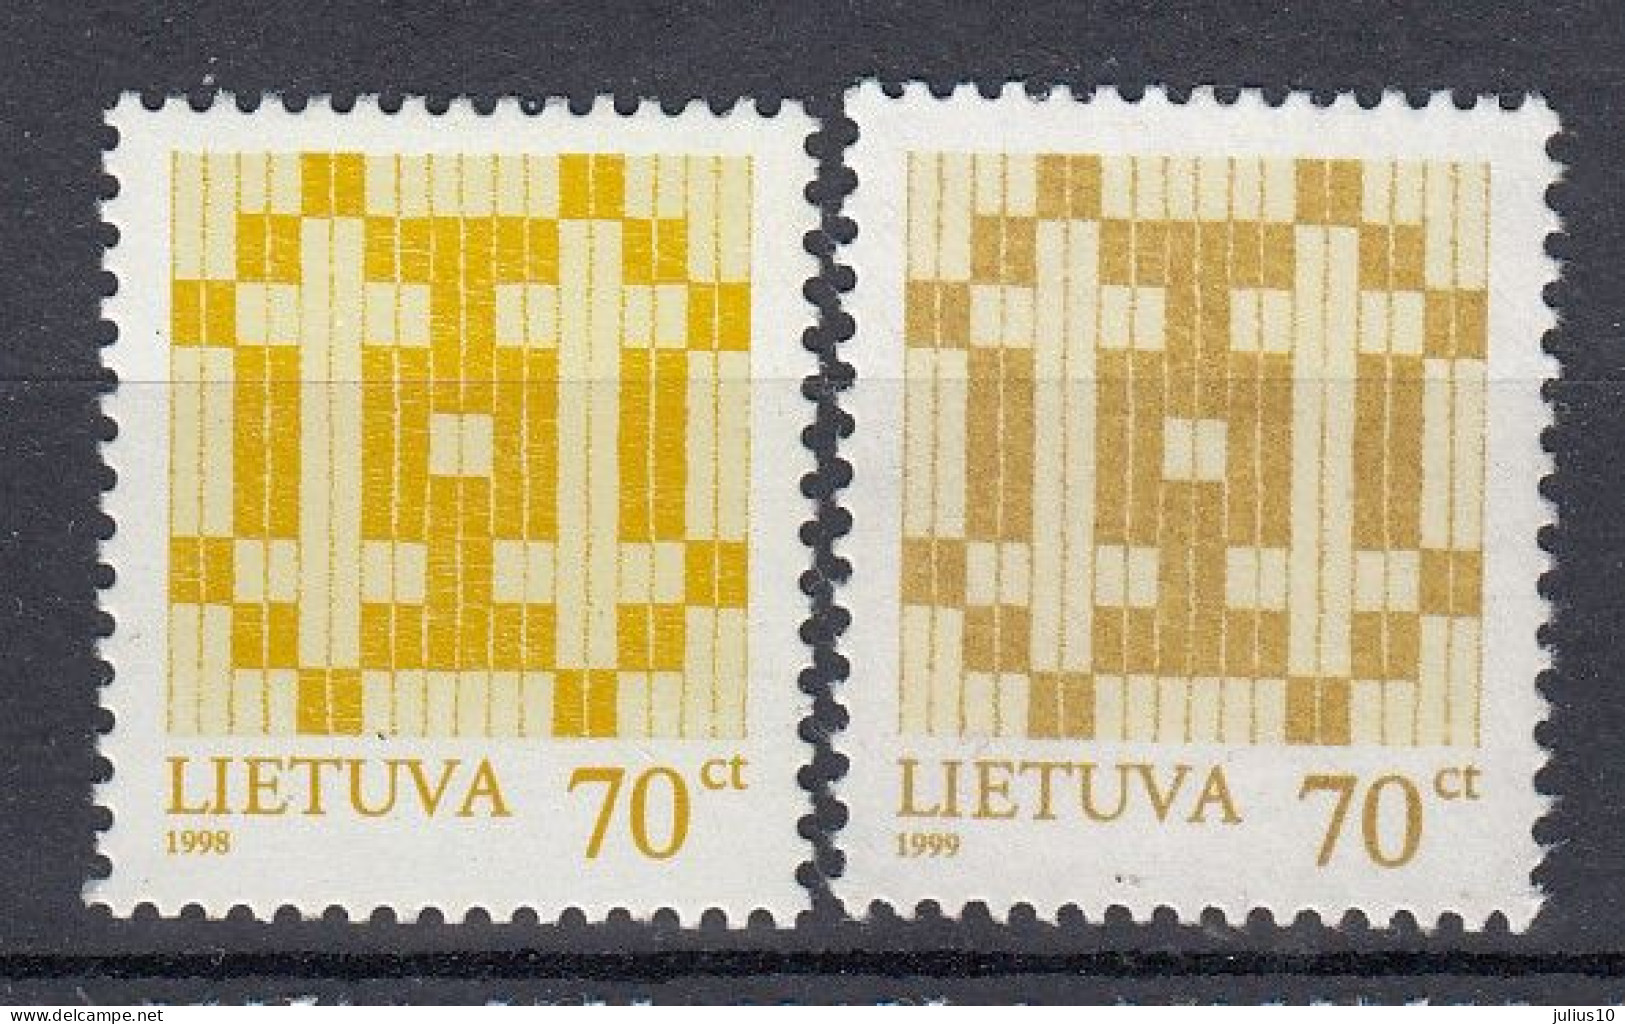 LITHUANIA 1998, 1999 Double Cross MNH(**) Mi 668 I, 668 II #Lt1180 - Lithuania